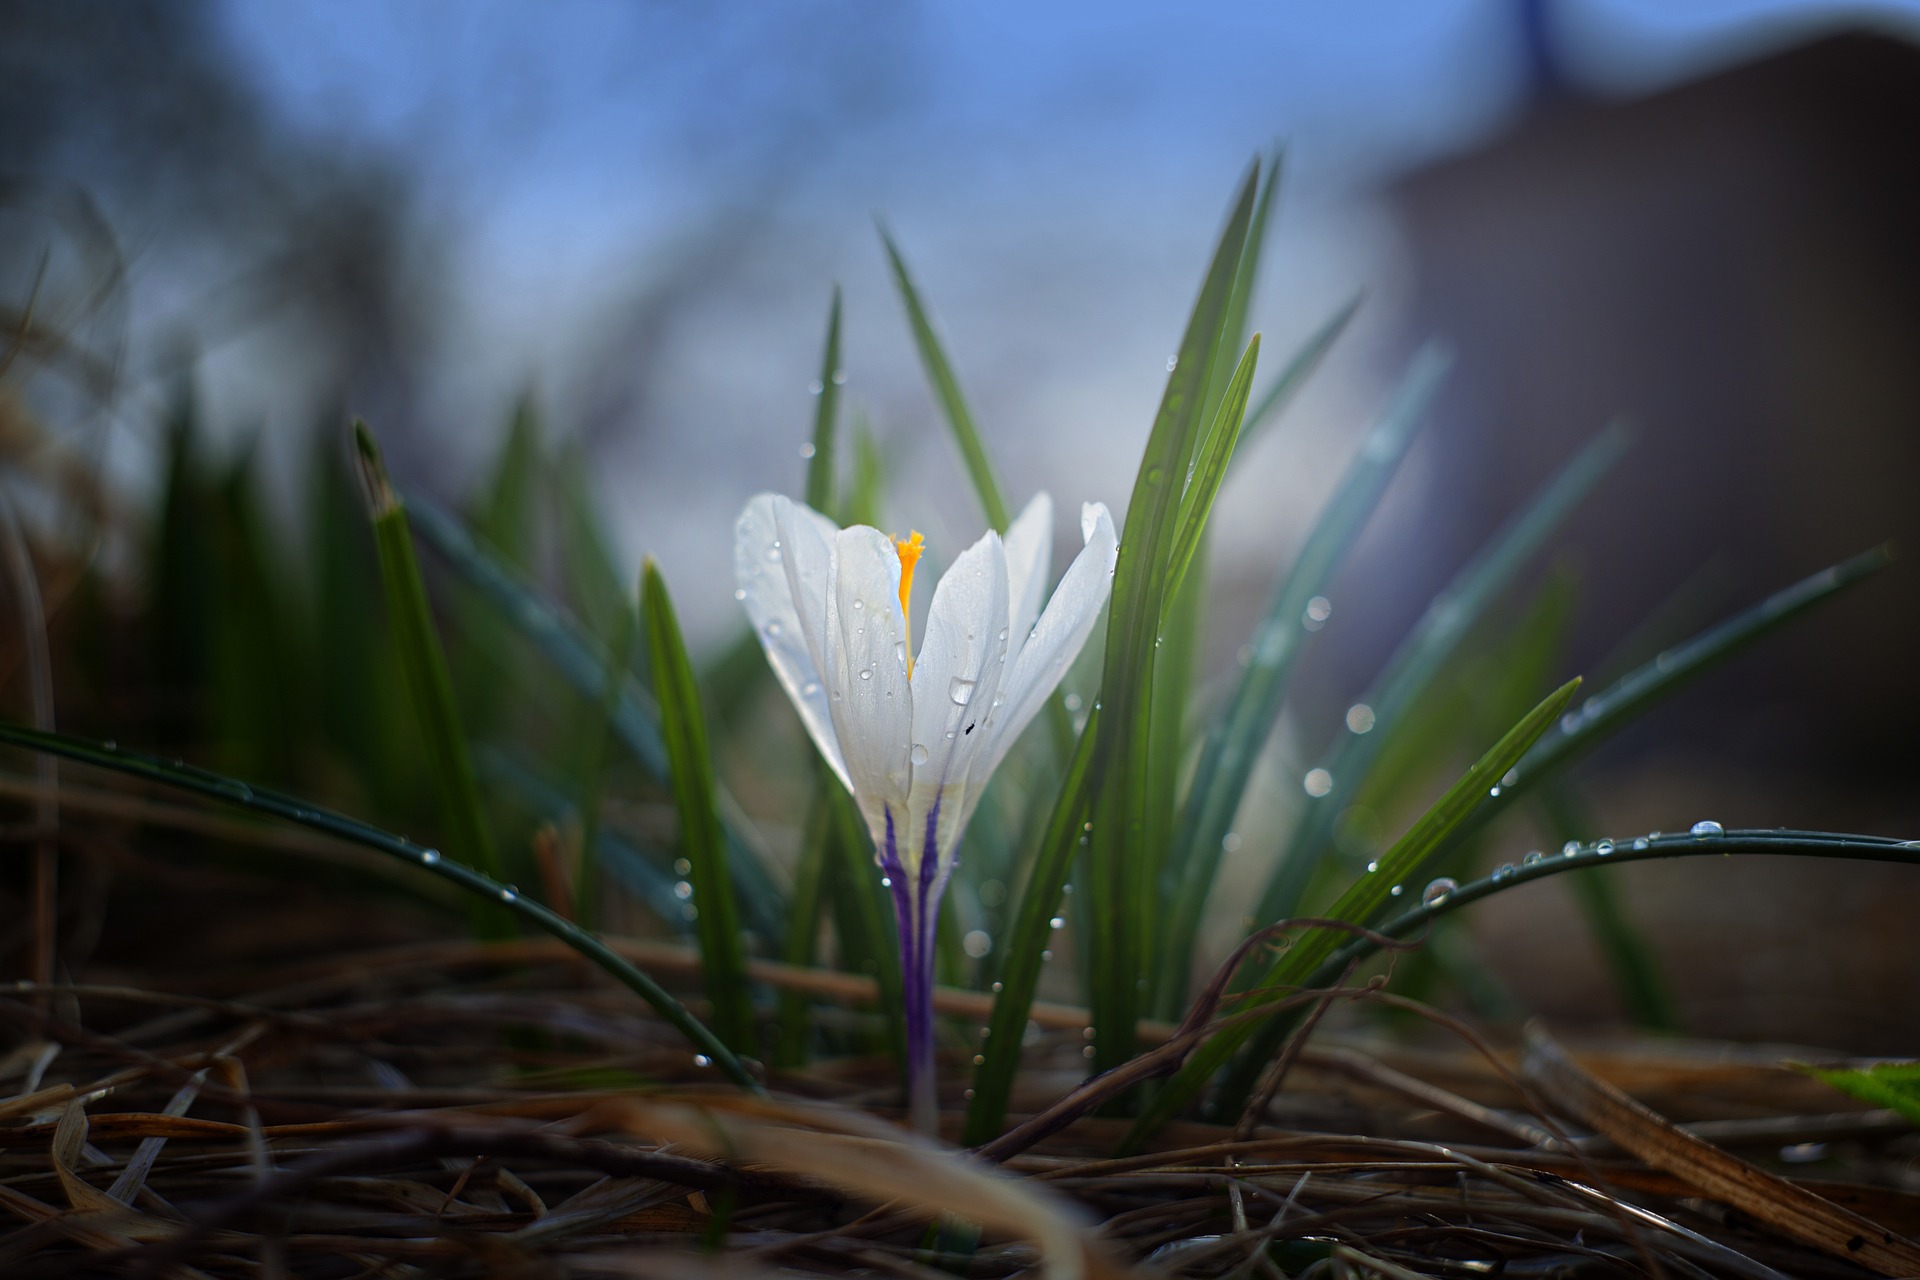 Eine weiße Krokusblüte mit lila Stengel und grünen Blättern ist aus dürrem, braunen Gras empor gewachsen. Blüte und Blätter sind voller Wasserperlen.